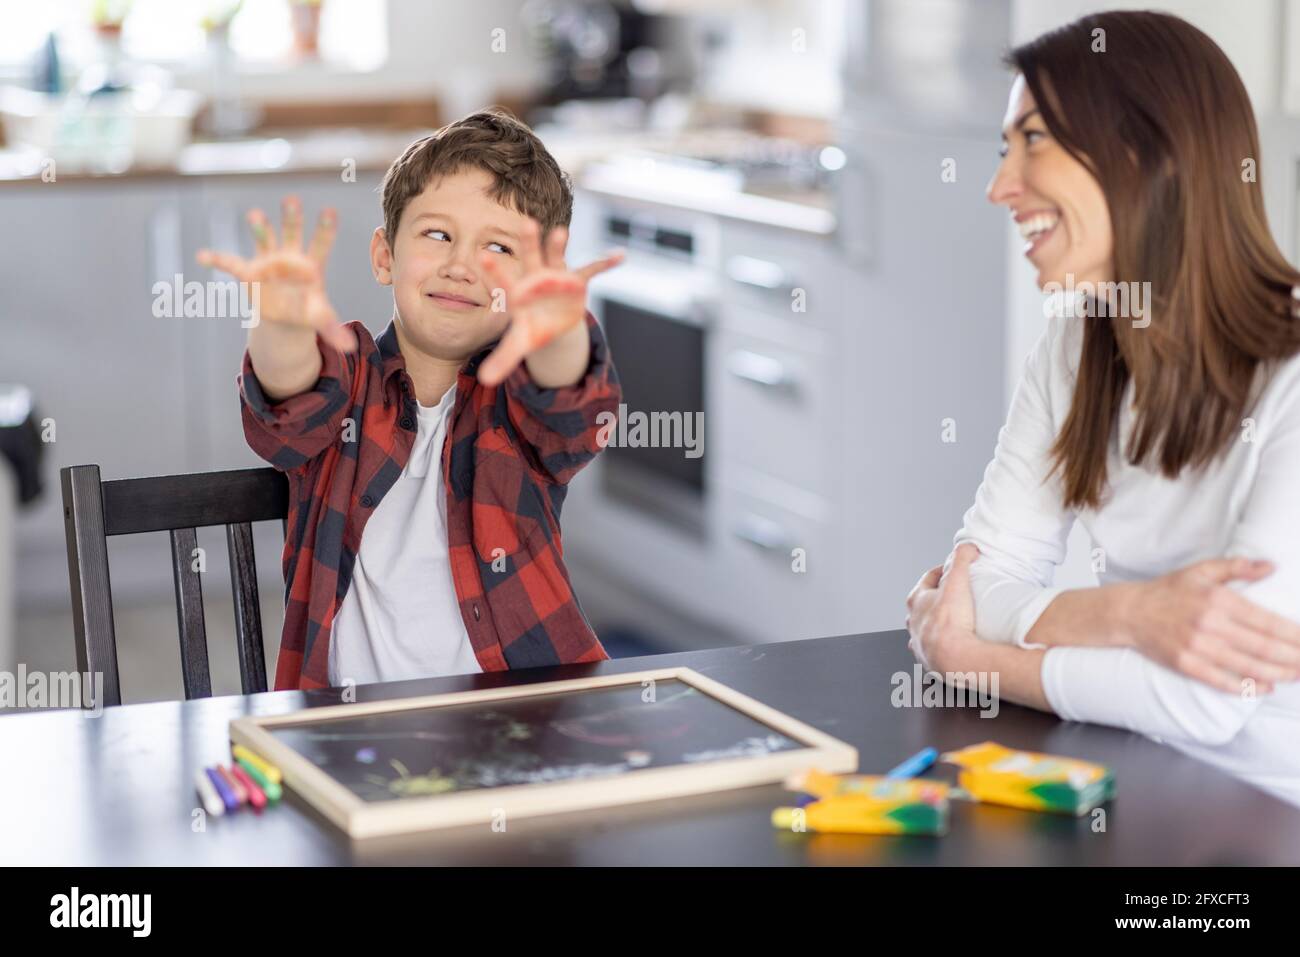 Ragazzo che mostra le mani sporche mentre si guarda con uno sguardo laterale alla madre in cucina Foto Stock